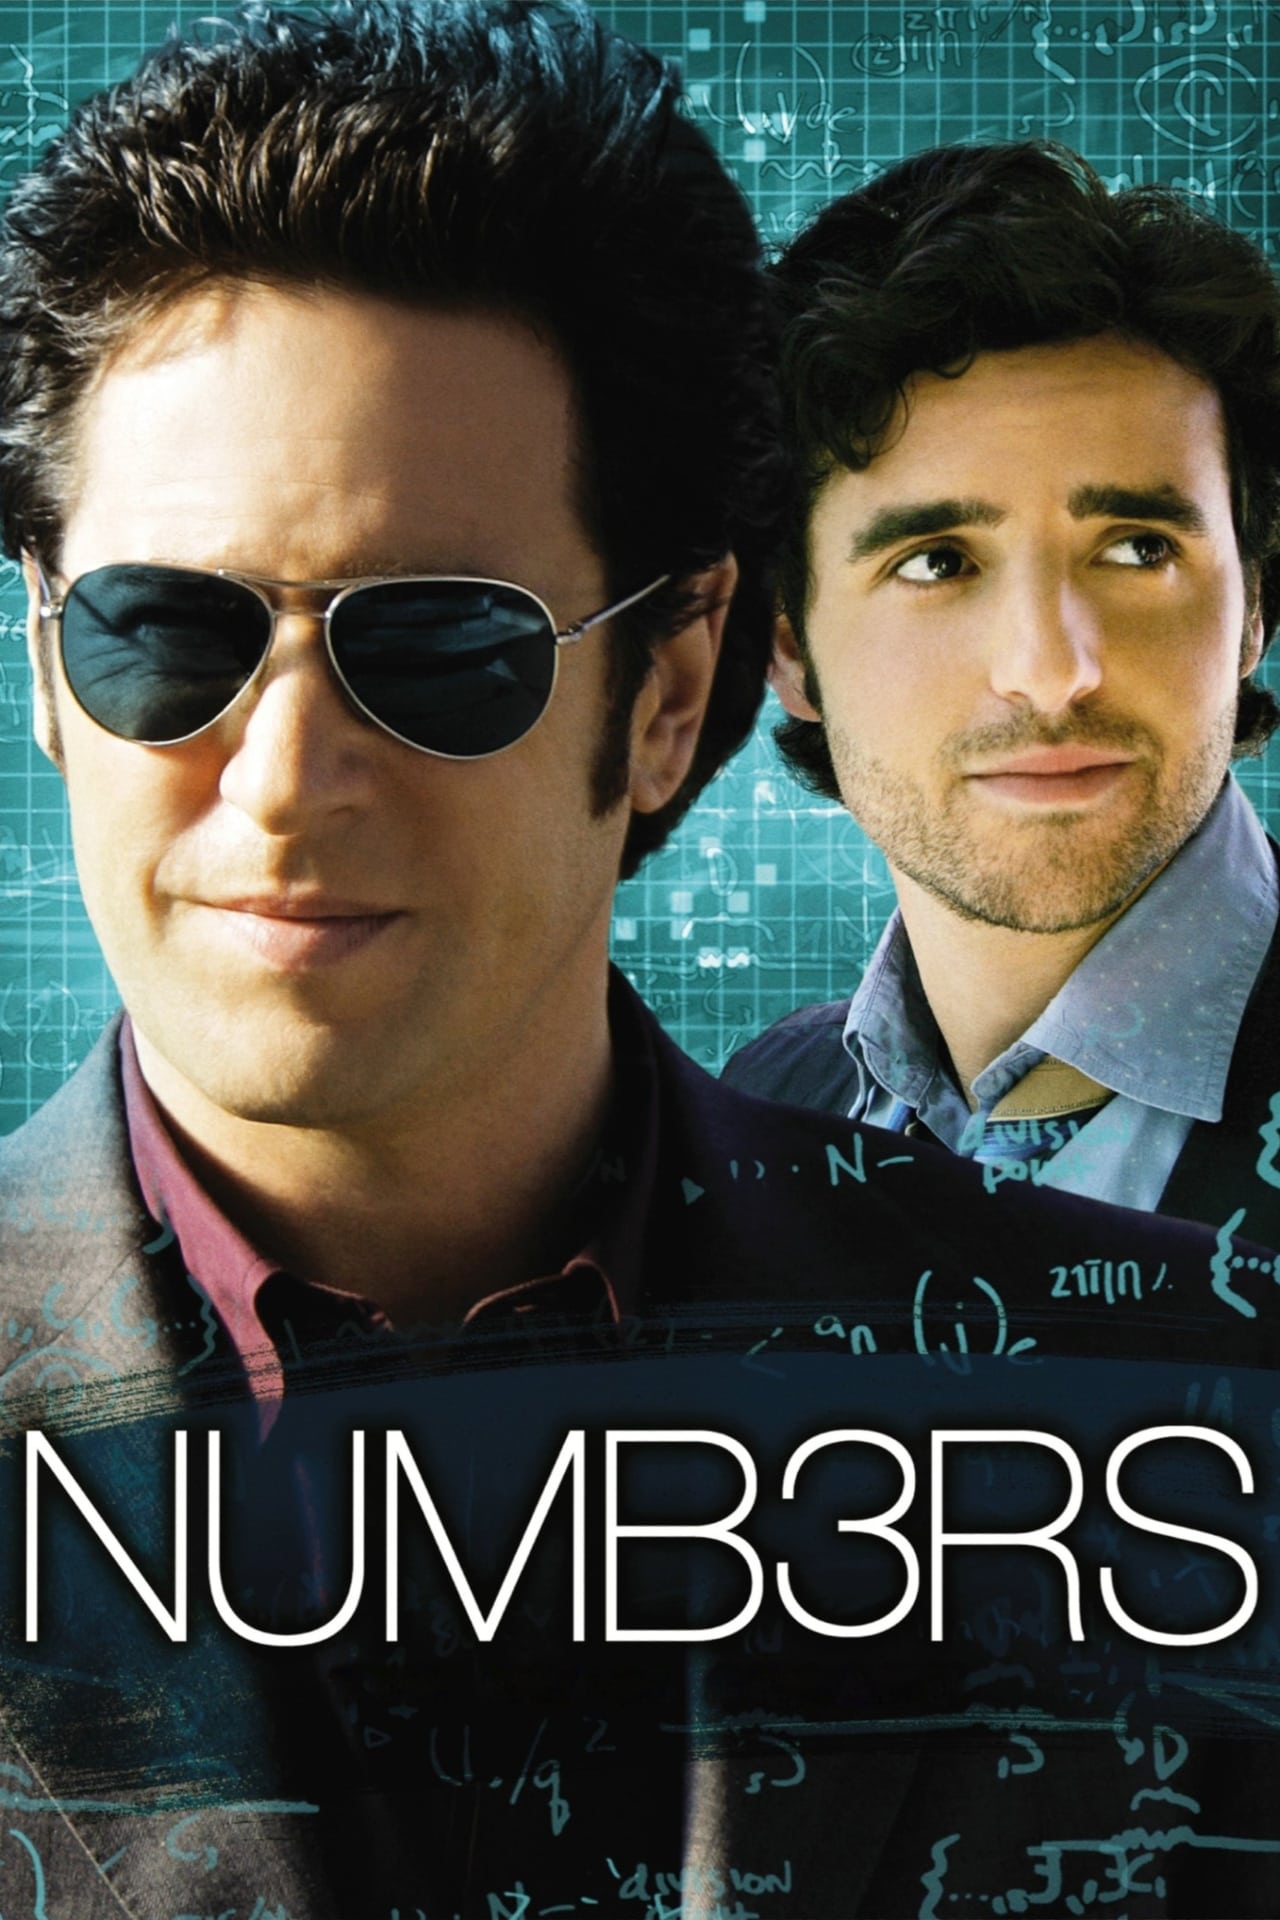 Numb3rs (season 2)